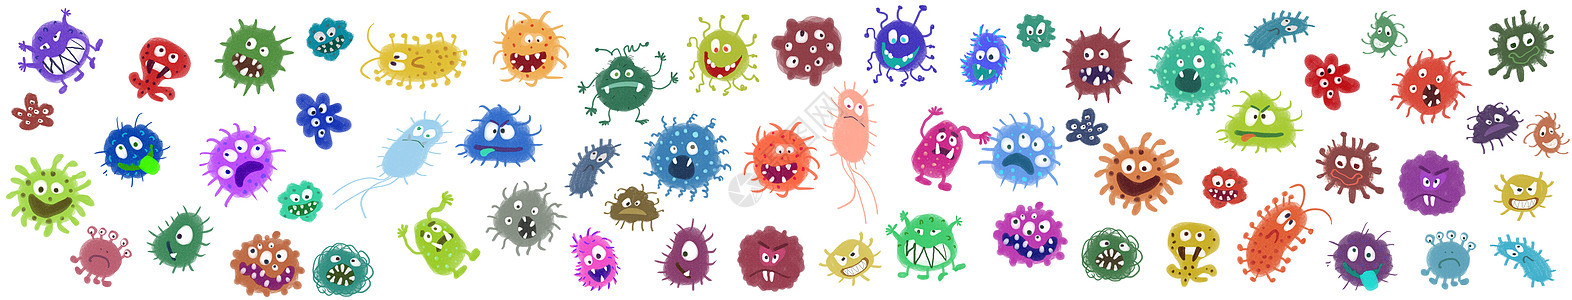 细菌病毒元素图片